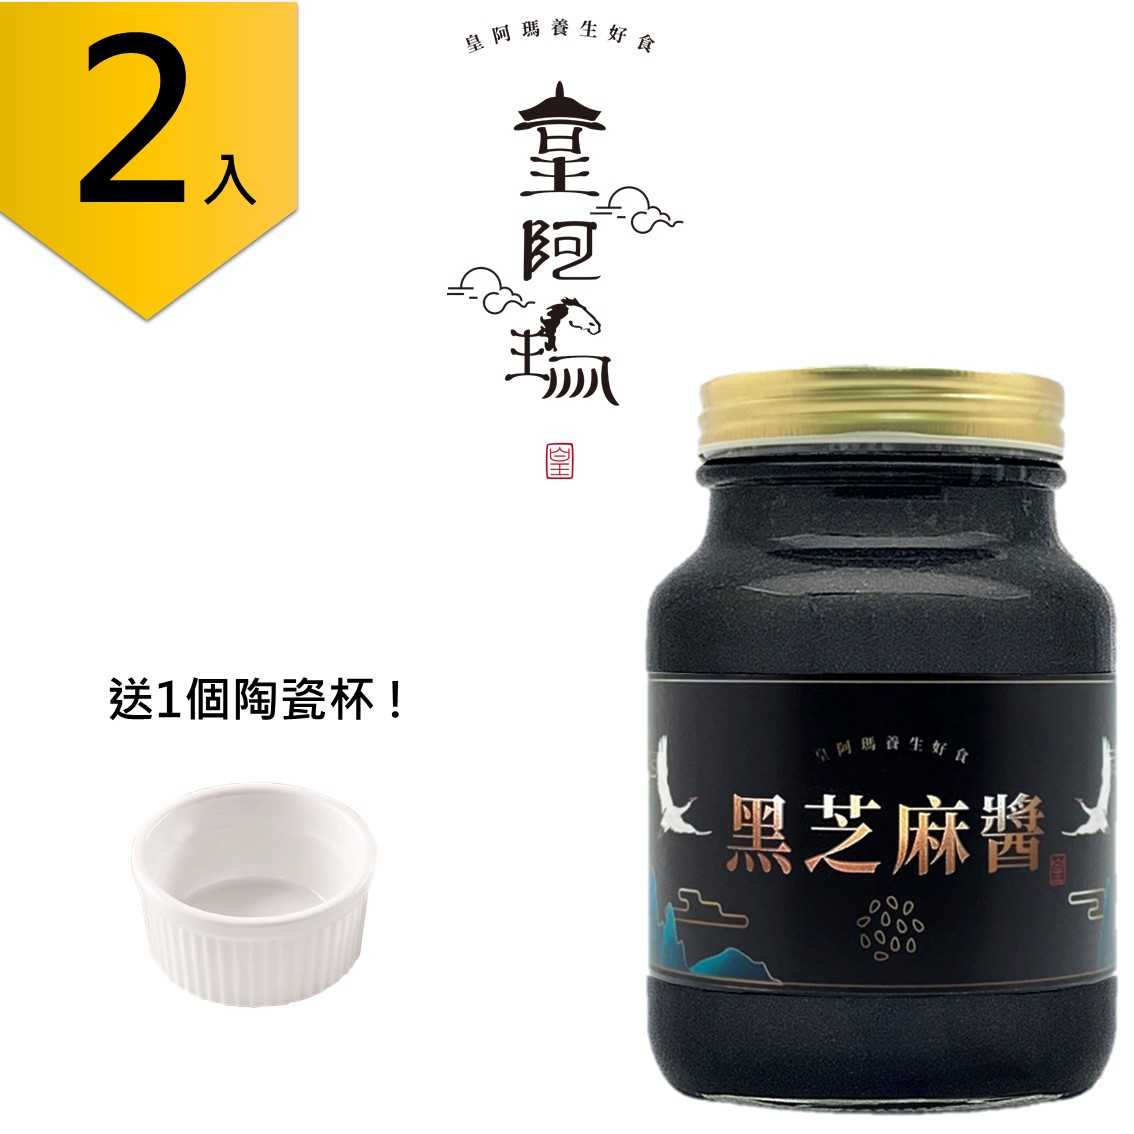 皇阿瑪-黑芝麻醬 600g/瓶×1入 100%純黑芝麻製成，無糖無鹽、無化學添加、無添加植物油 通過檢驗合格   養顏美